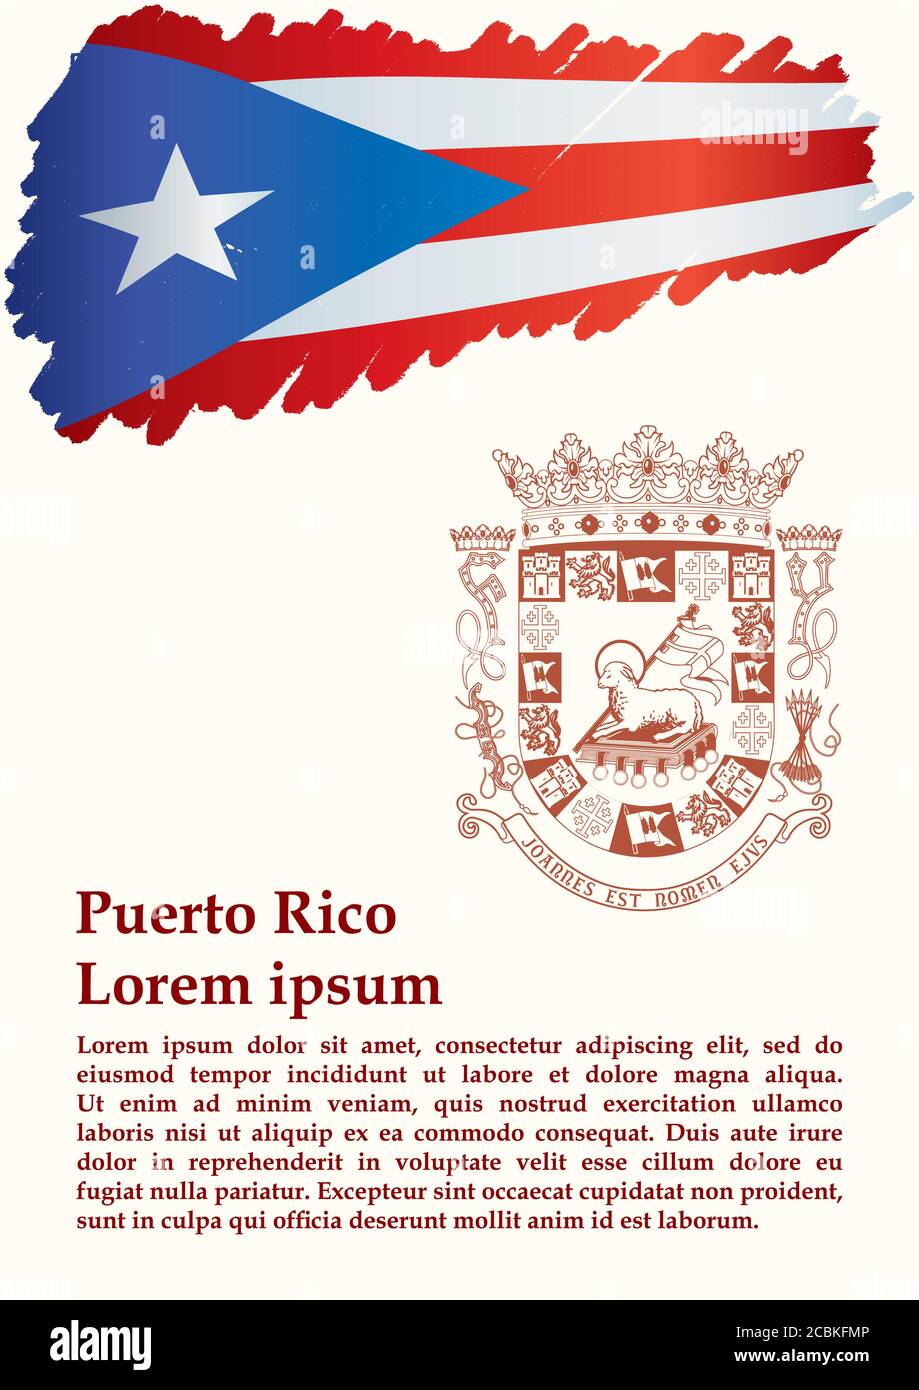 eternamente Odio solicitud Bandera de Puerto Rico, Estado libre asociado de Puerto Rico. Plantilla  para el diseño de premios, un documento oficial con la bandera de Puerto  Rico. vecto brillante y colorido Imagen Vector de